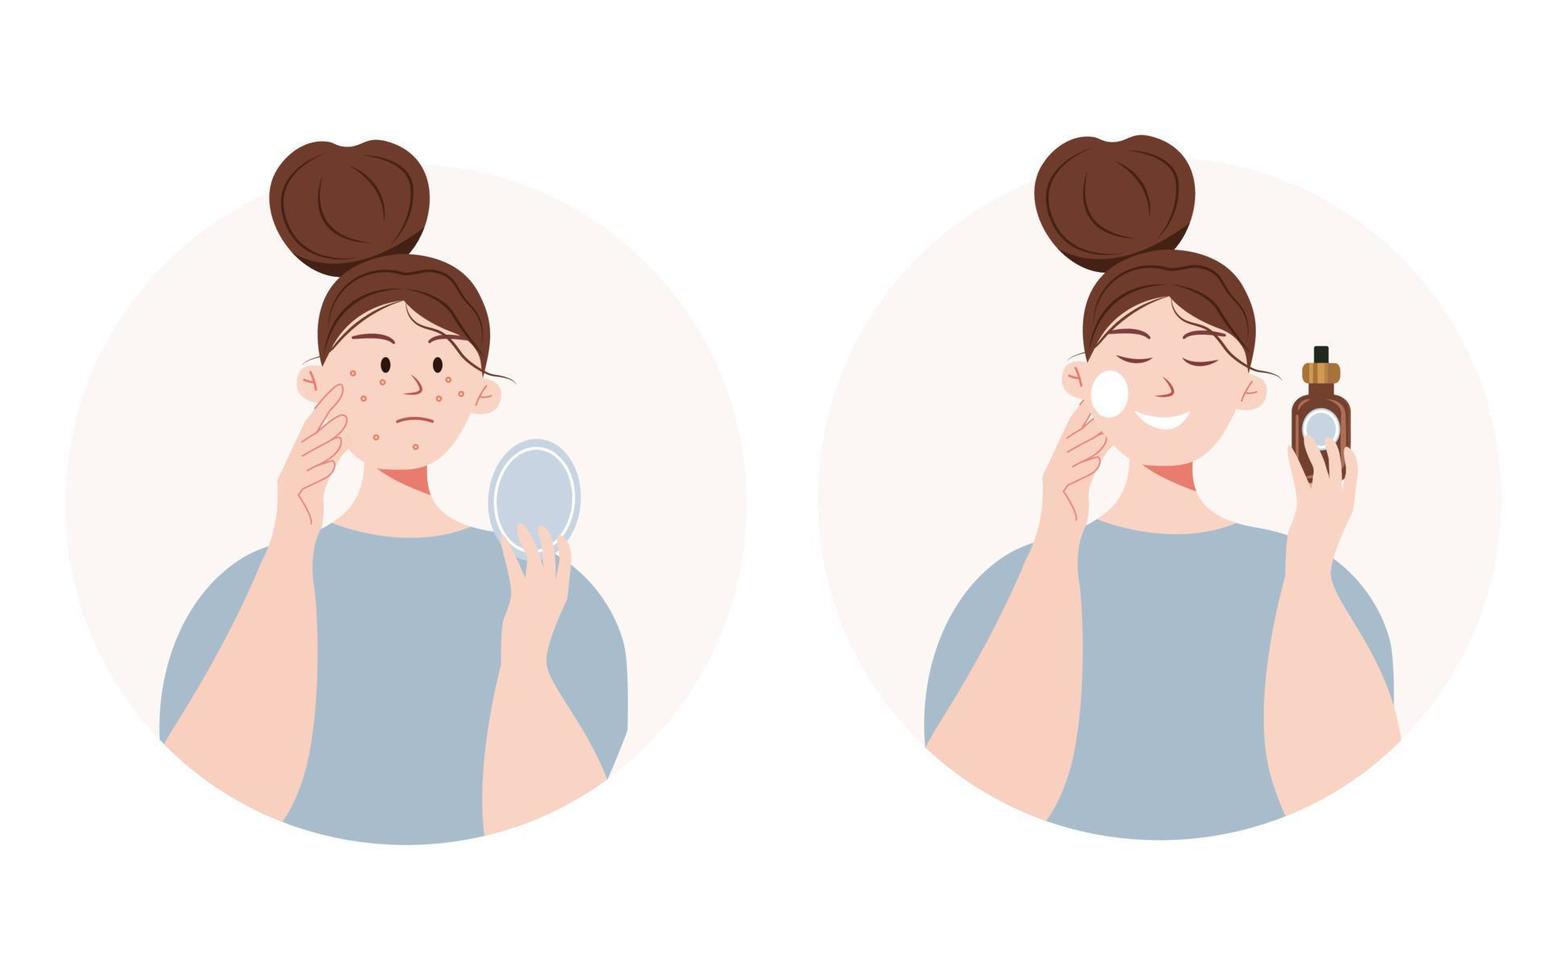 etapas de cuidados com a pele. ilustração dos desenhos animados com uma garota com acne usa problema de pele cosmética vetor